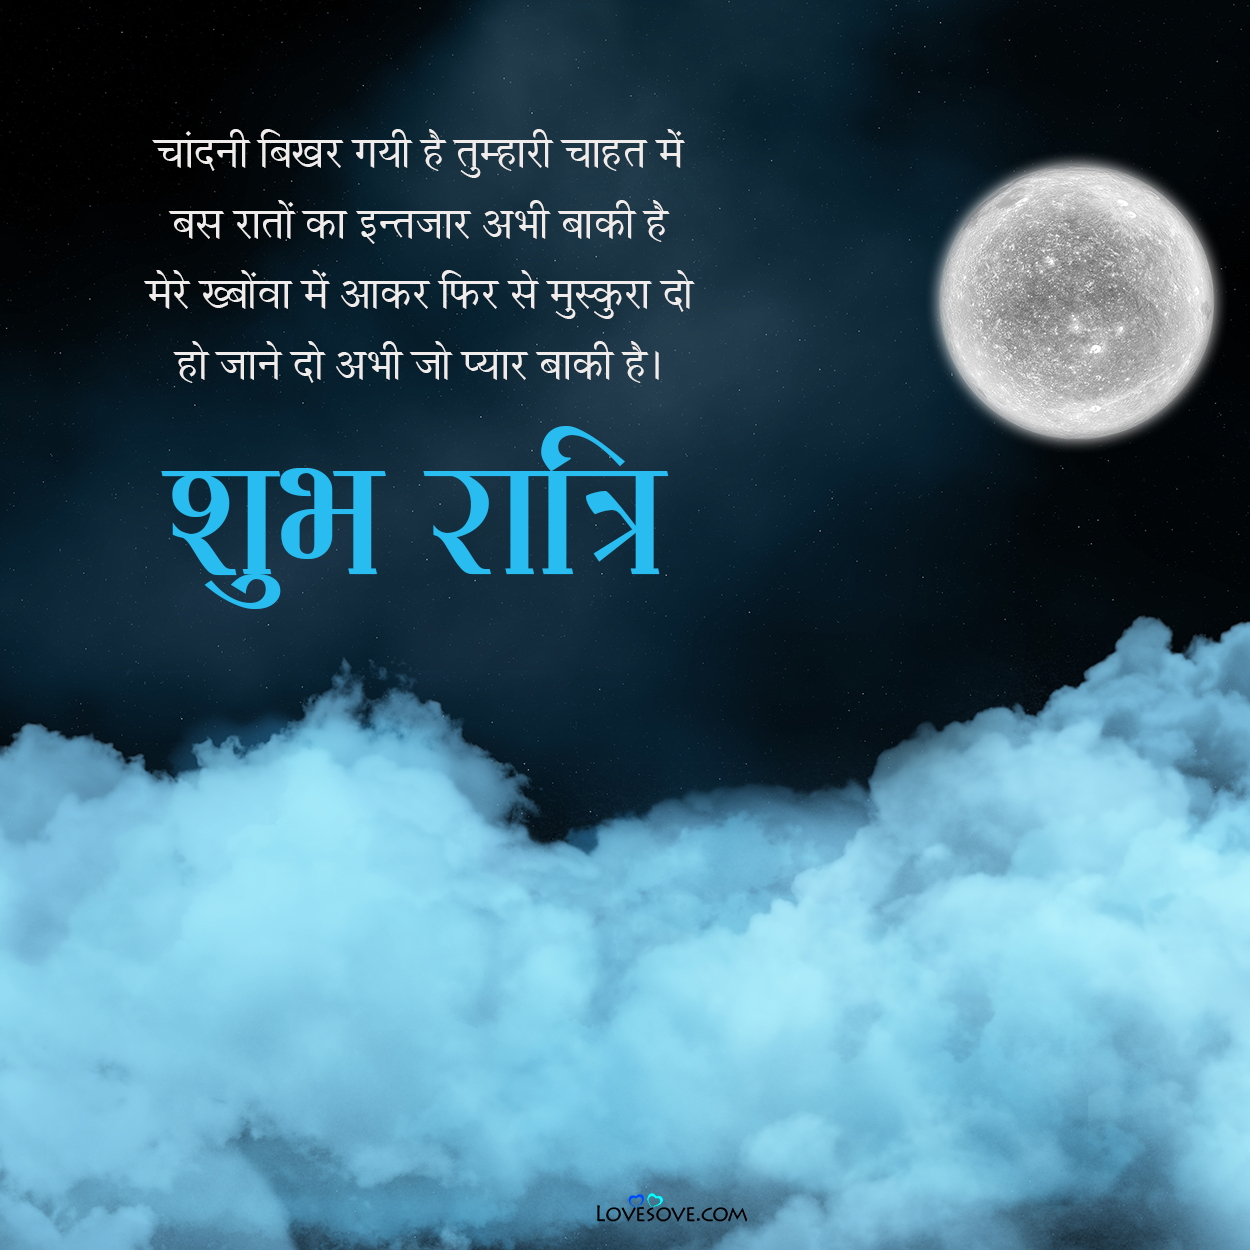 shubh ratri shayari, good night wishes in hindi